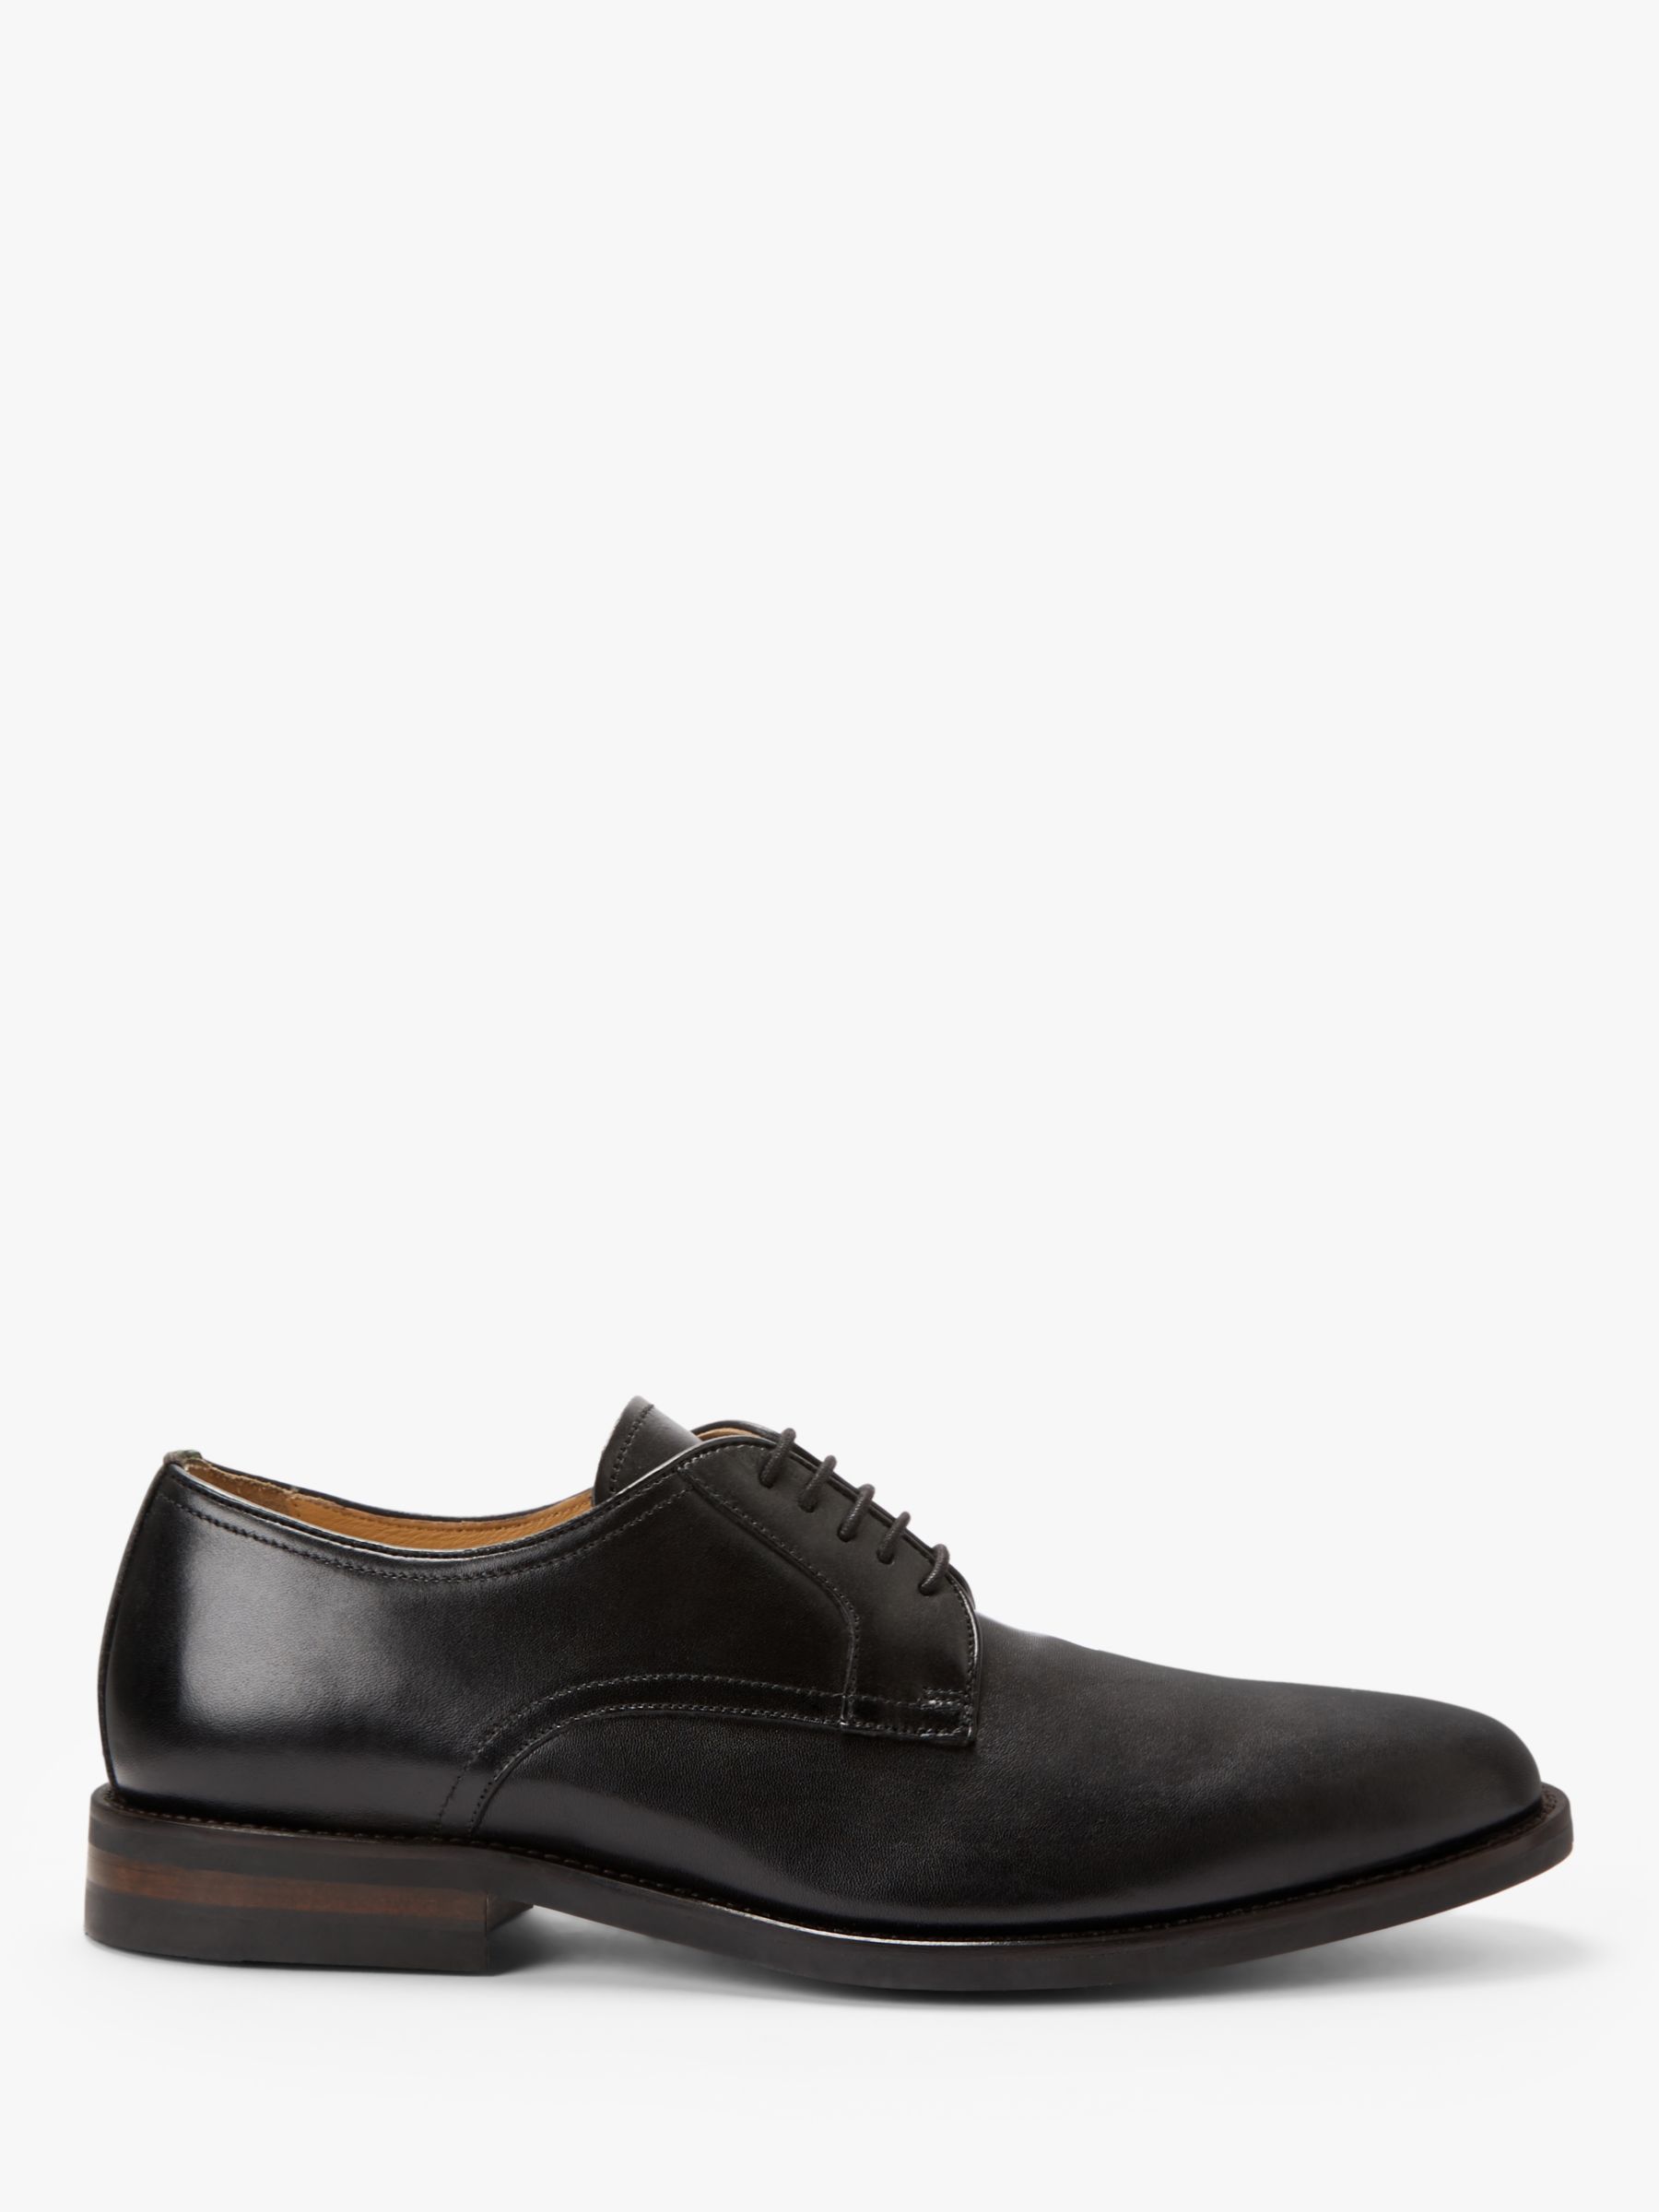 Men's Shoes - Black, Derby | John Lewis & Partners